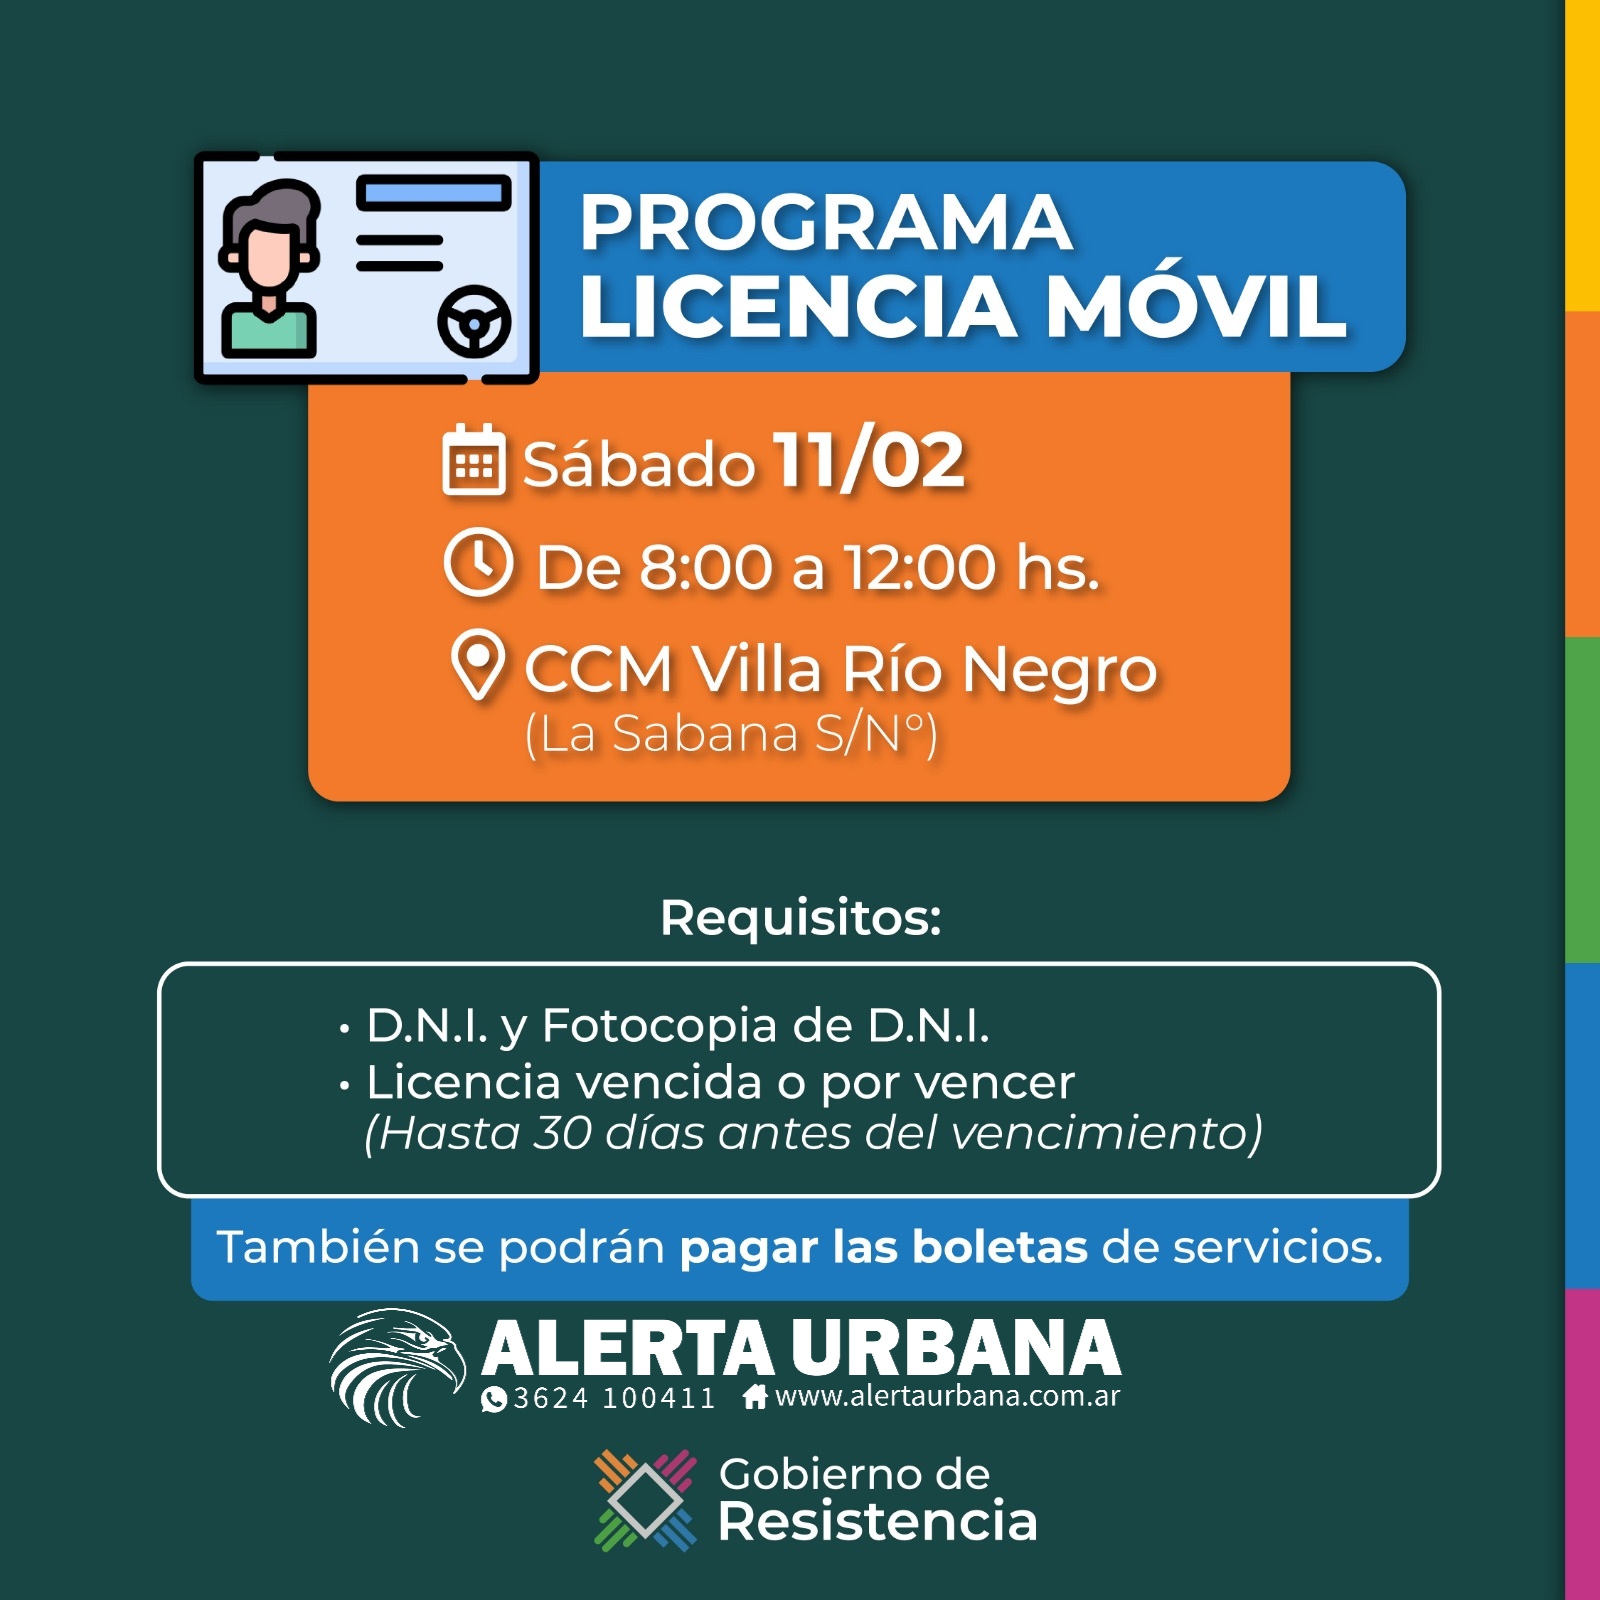 Licencia móvil atenderá este sábado en el CCM Villa Río Negro